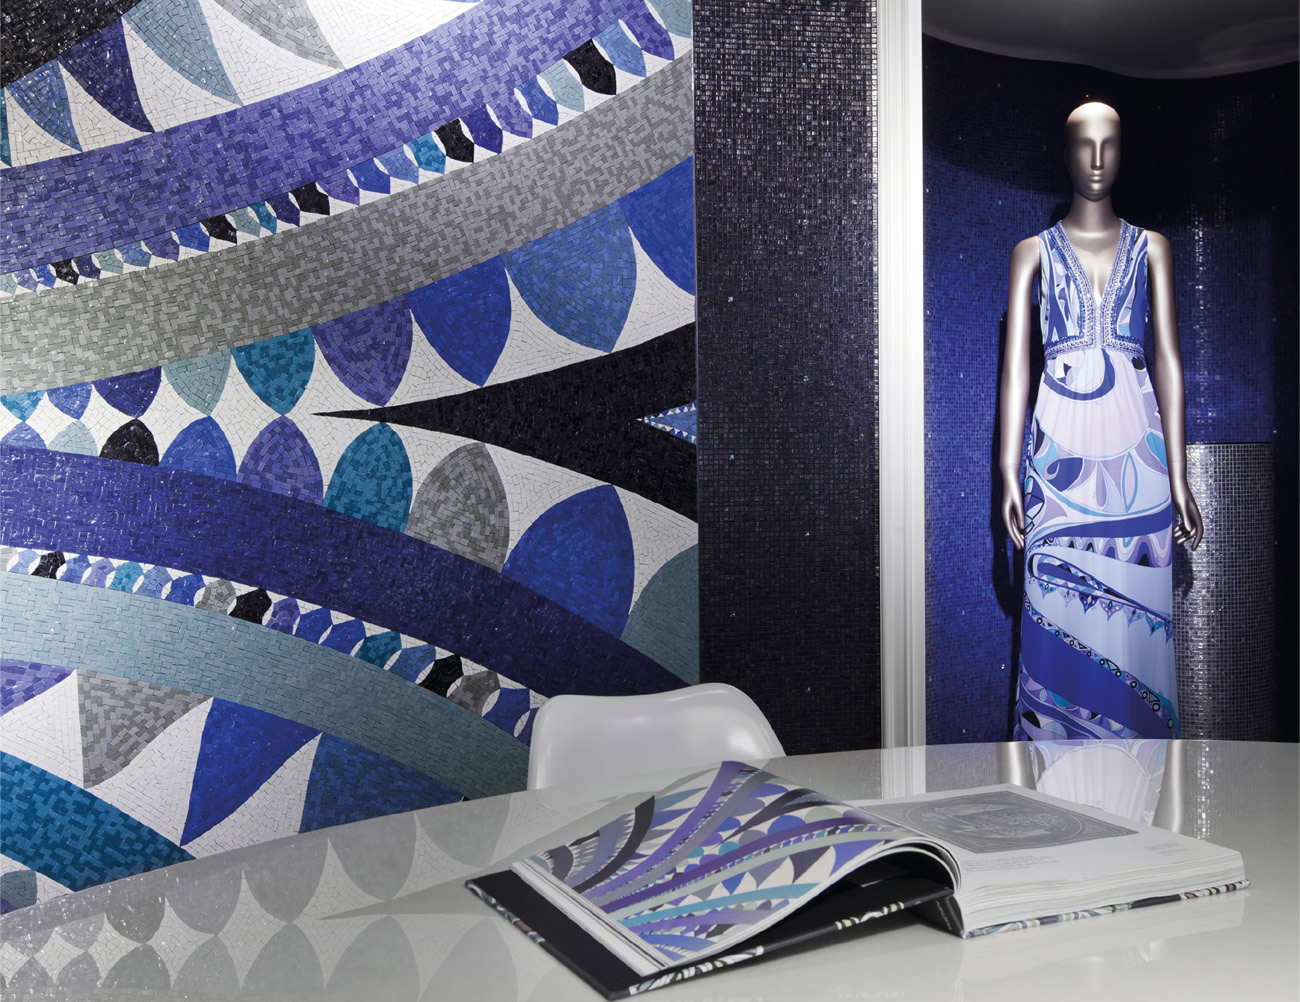 Collezione Bisazza wears Pucci, decoro Fontana e sue trasposizioni su tessuto, stampa e mosaico.